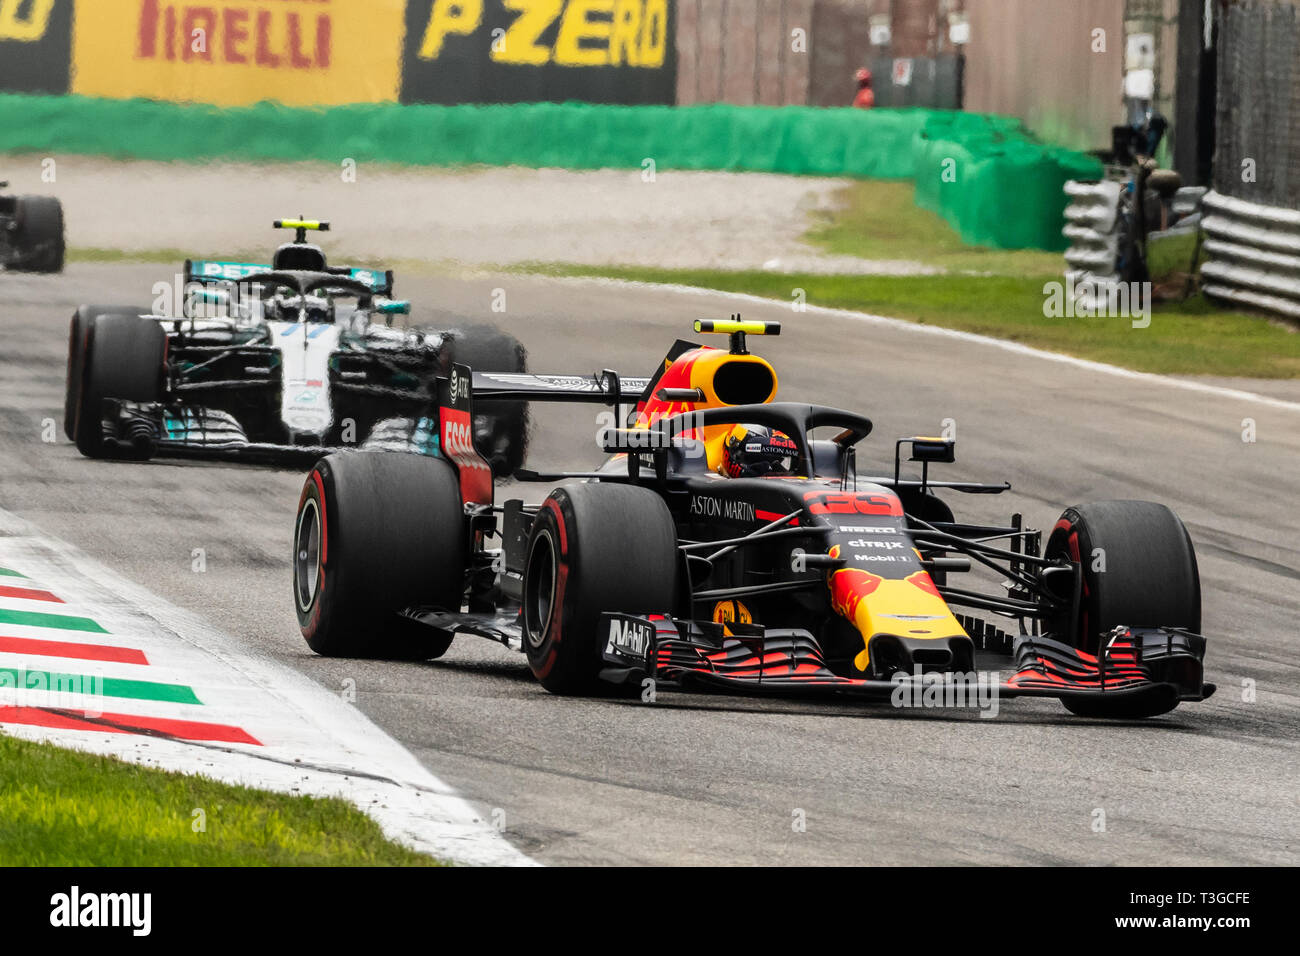 Monza/Italia - #33 Max Verstappen e #77 Valtteri Bottas lottano per la posizione durante il GP DI ITALIA Foto Stock